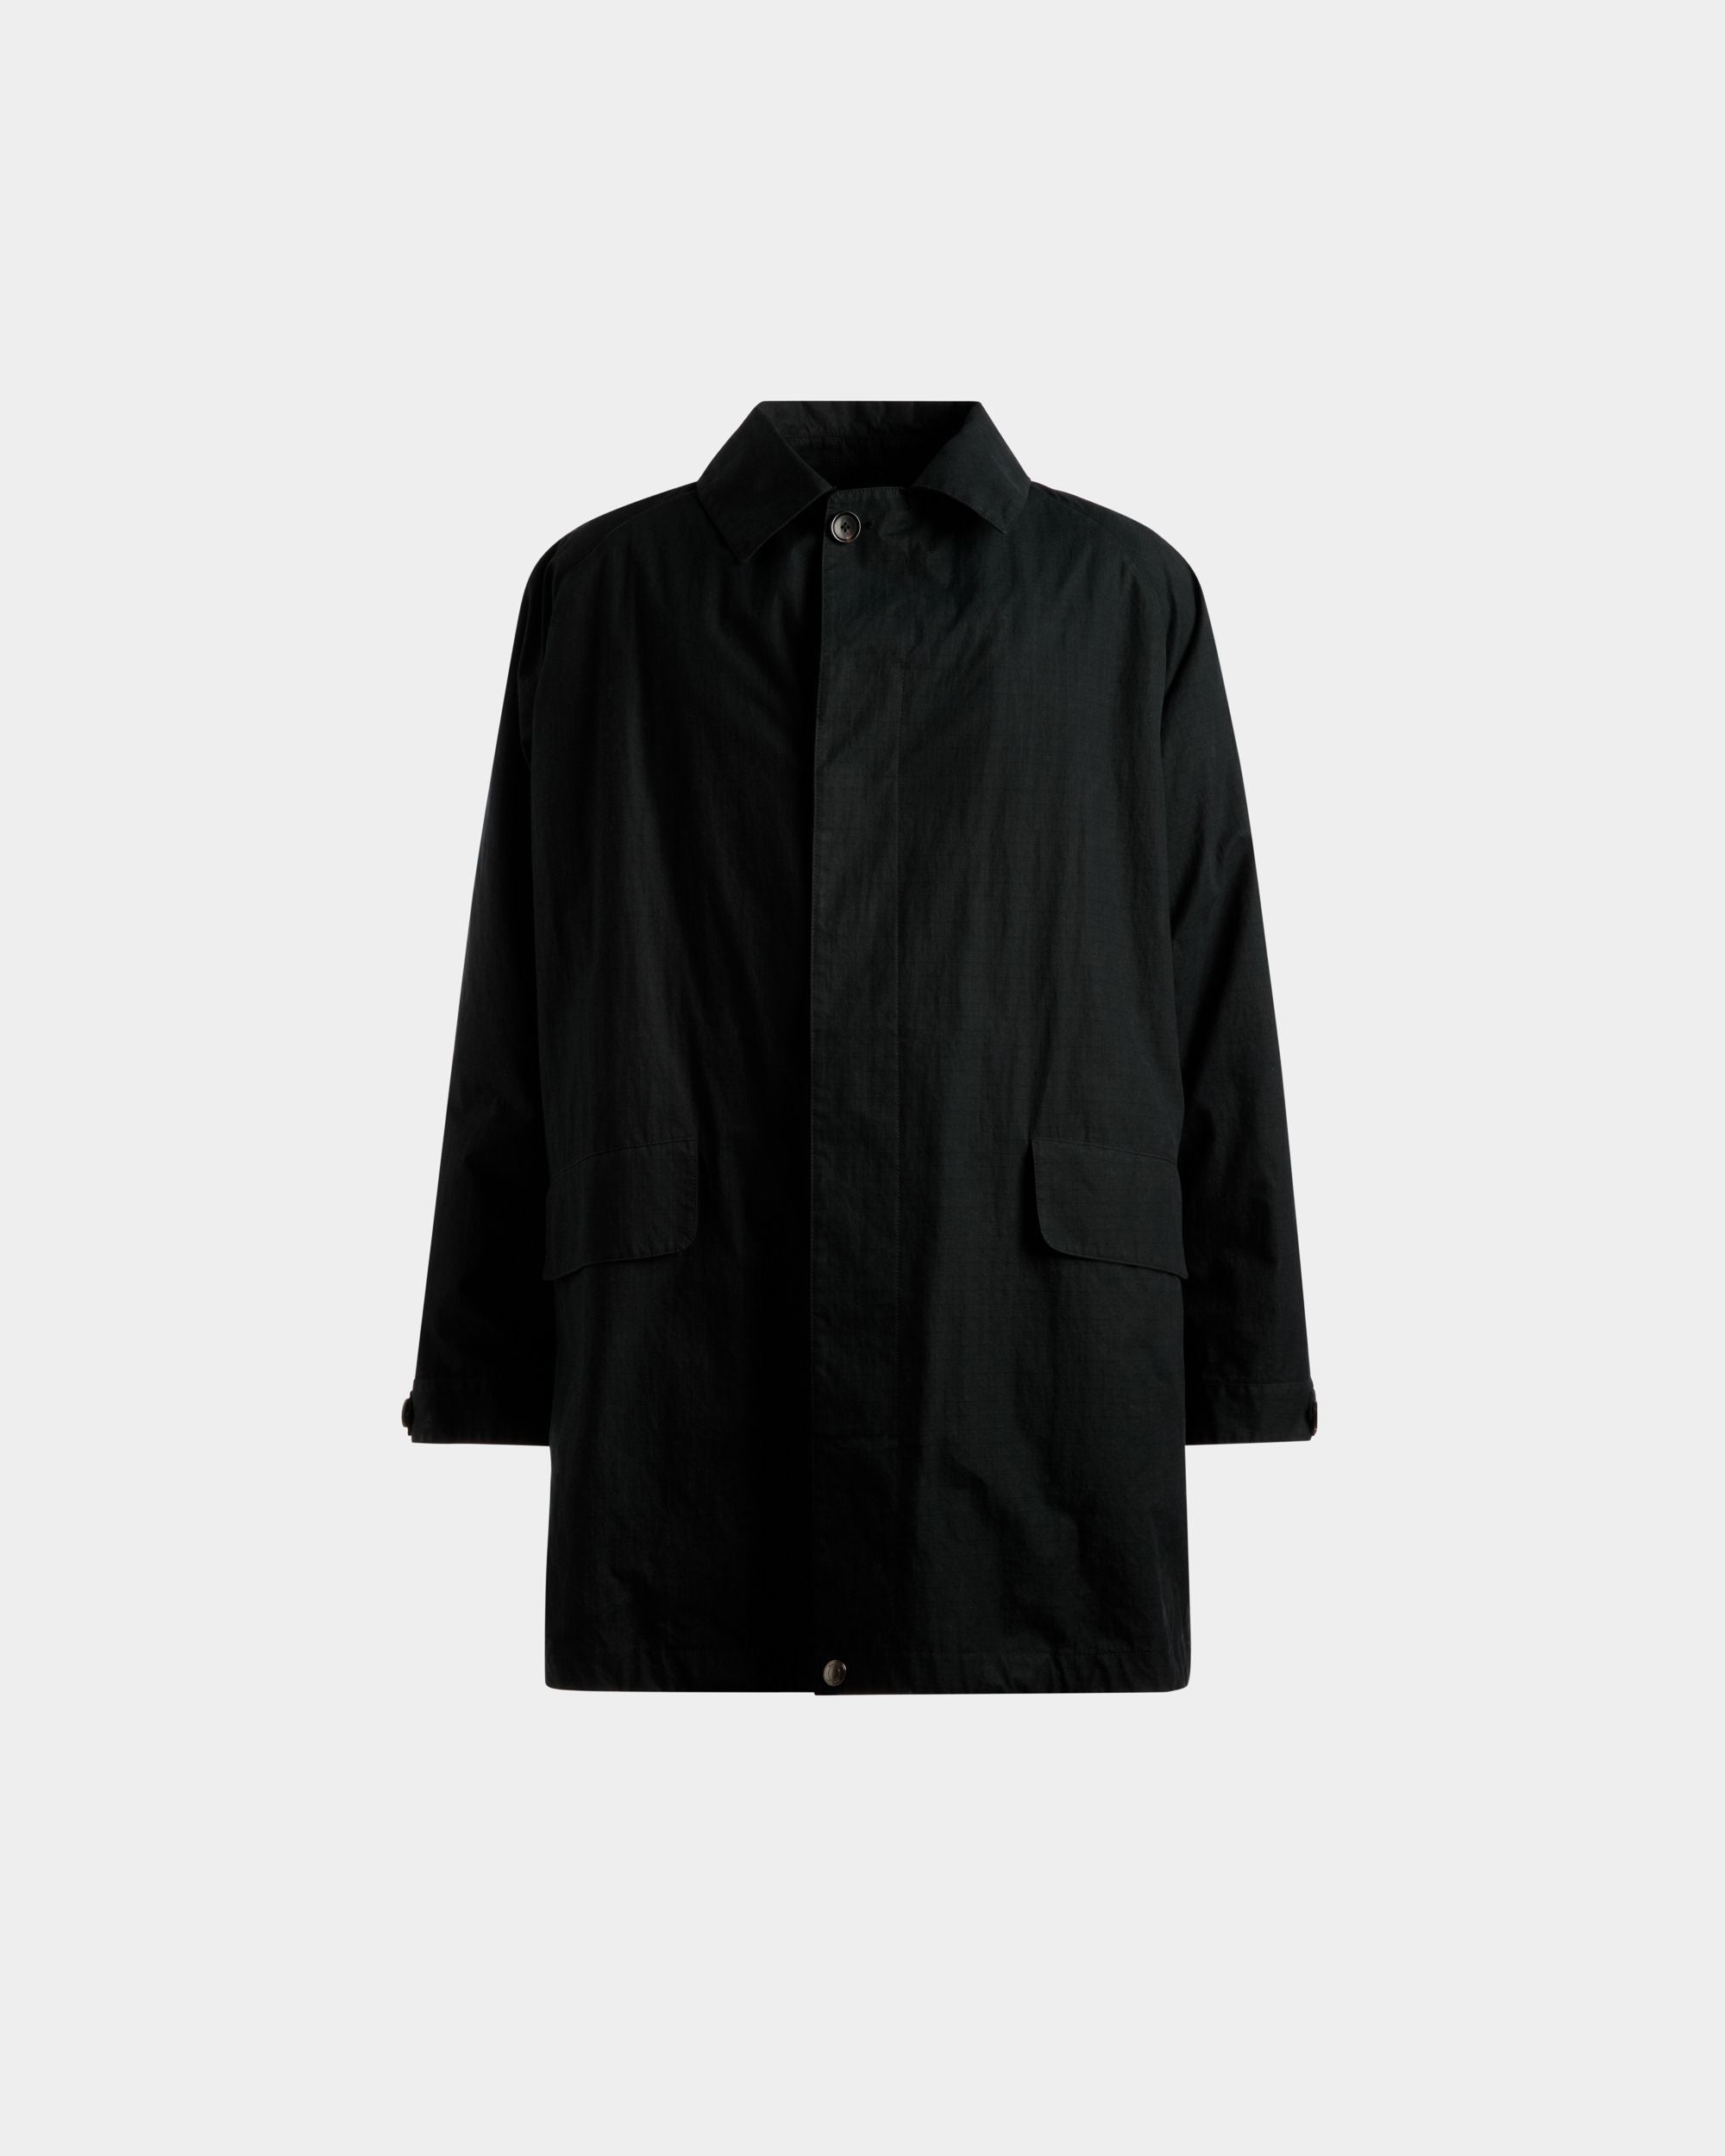 Manteau duster-coat | Manteau pour homme | Polyamide noir | Bally | Still Life Devant